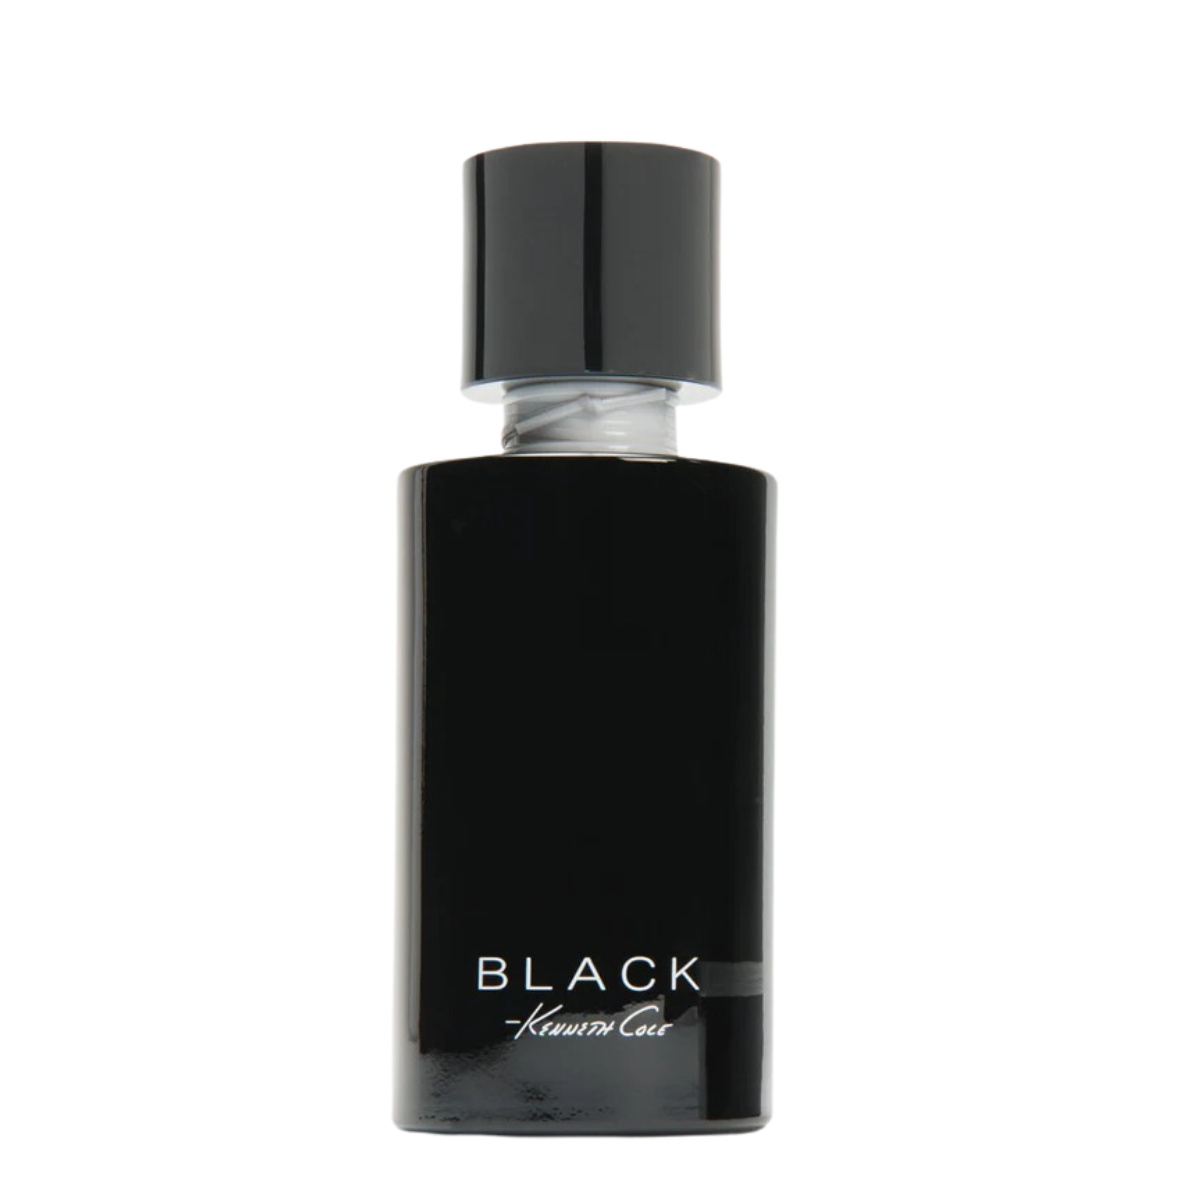 Kenneth Cole Black For Her Eau De Parfum